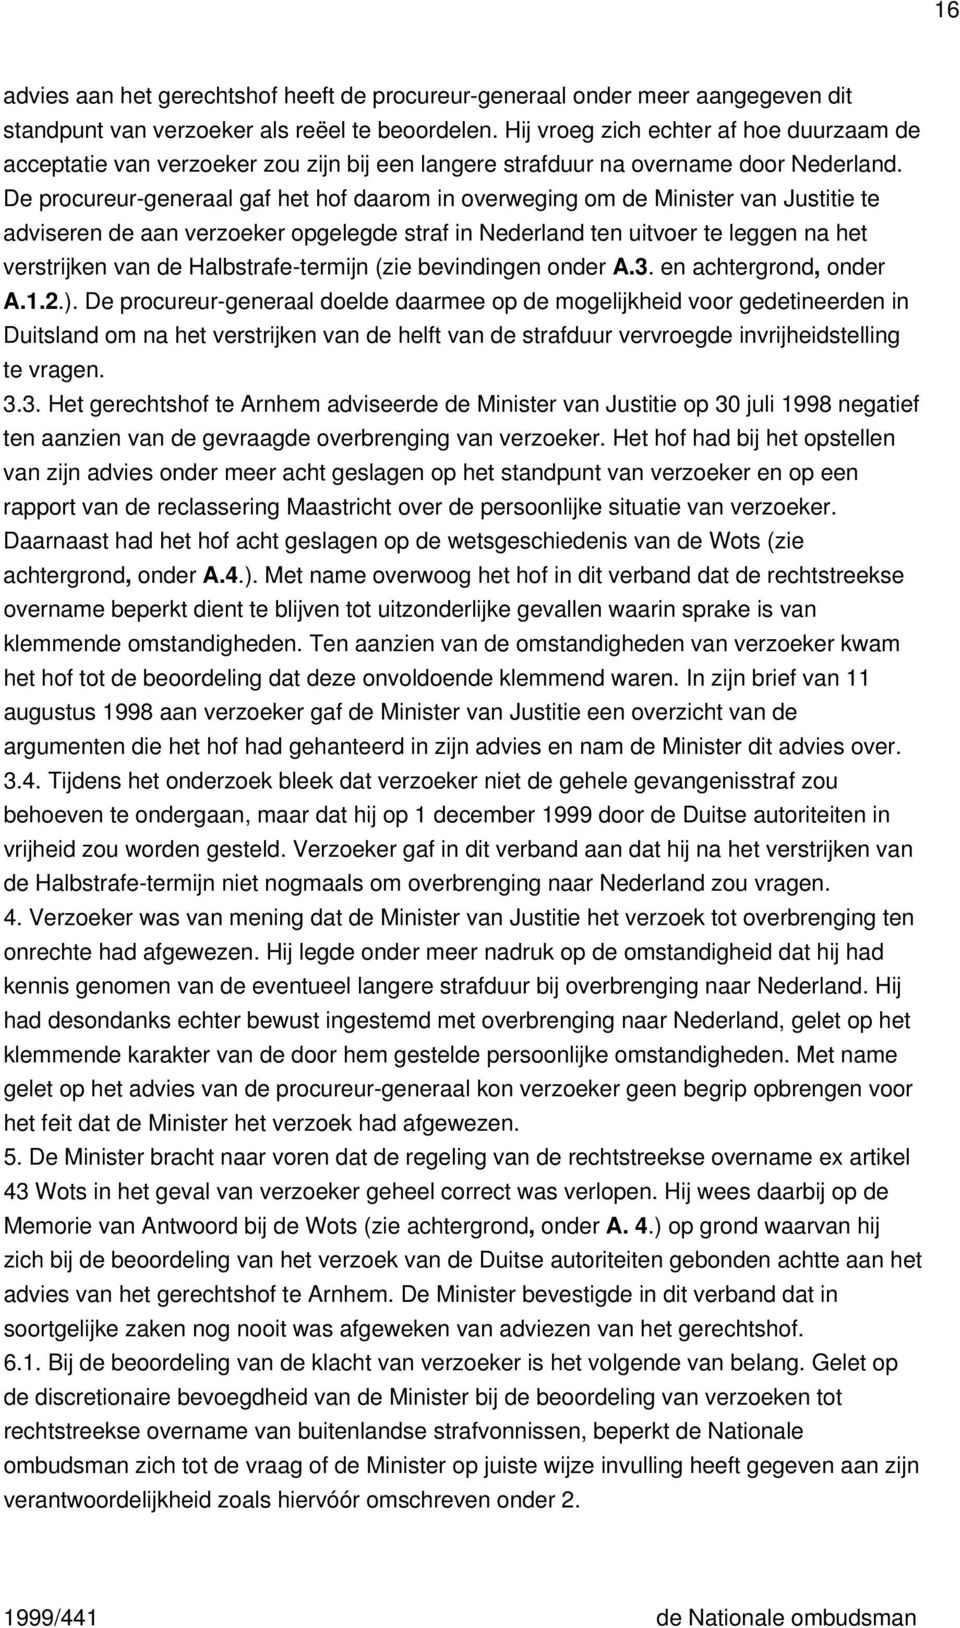 De procureur-generaal gaf het hof daarom in overweging om de Minister van Justitie te adviseren de aan verzoeker opgelegde straf in Nederland ten uitvoer te leggen na het verstrijken van de